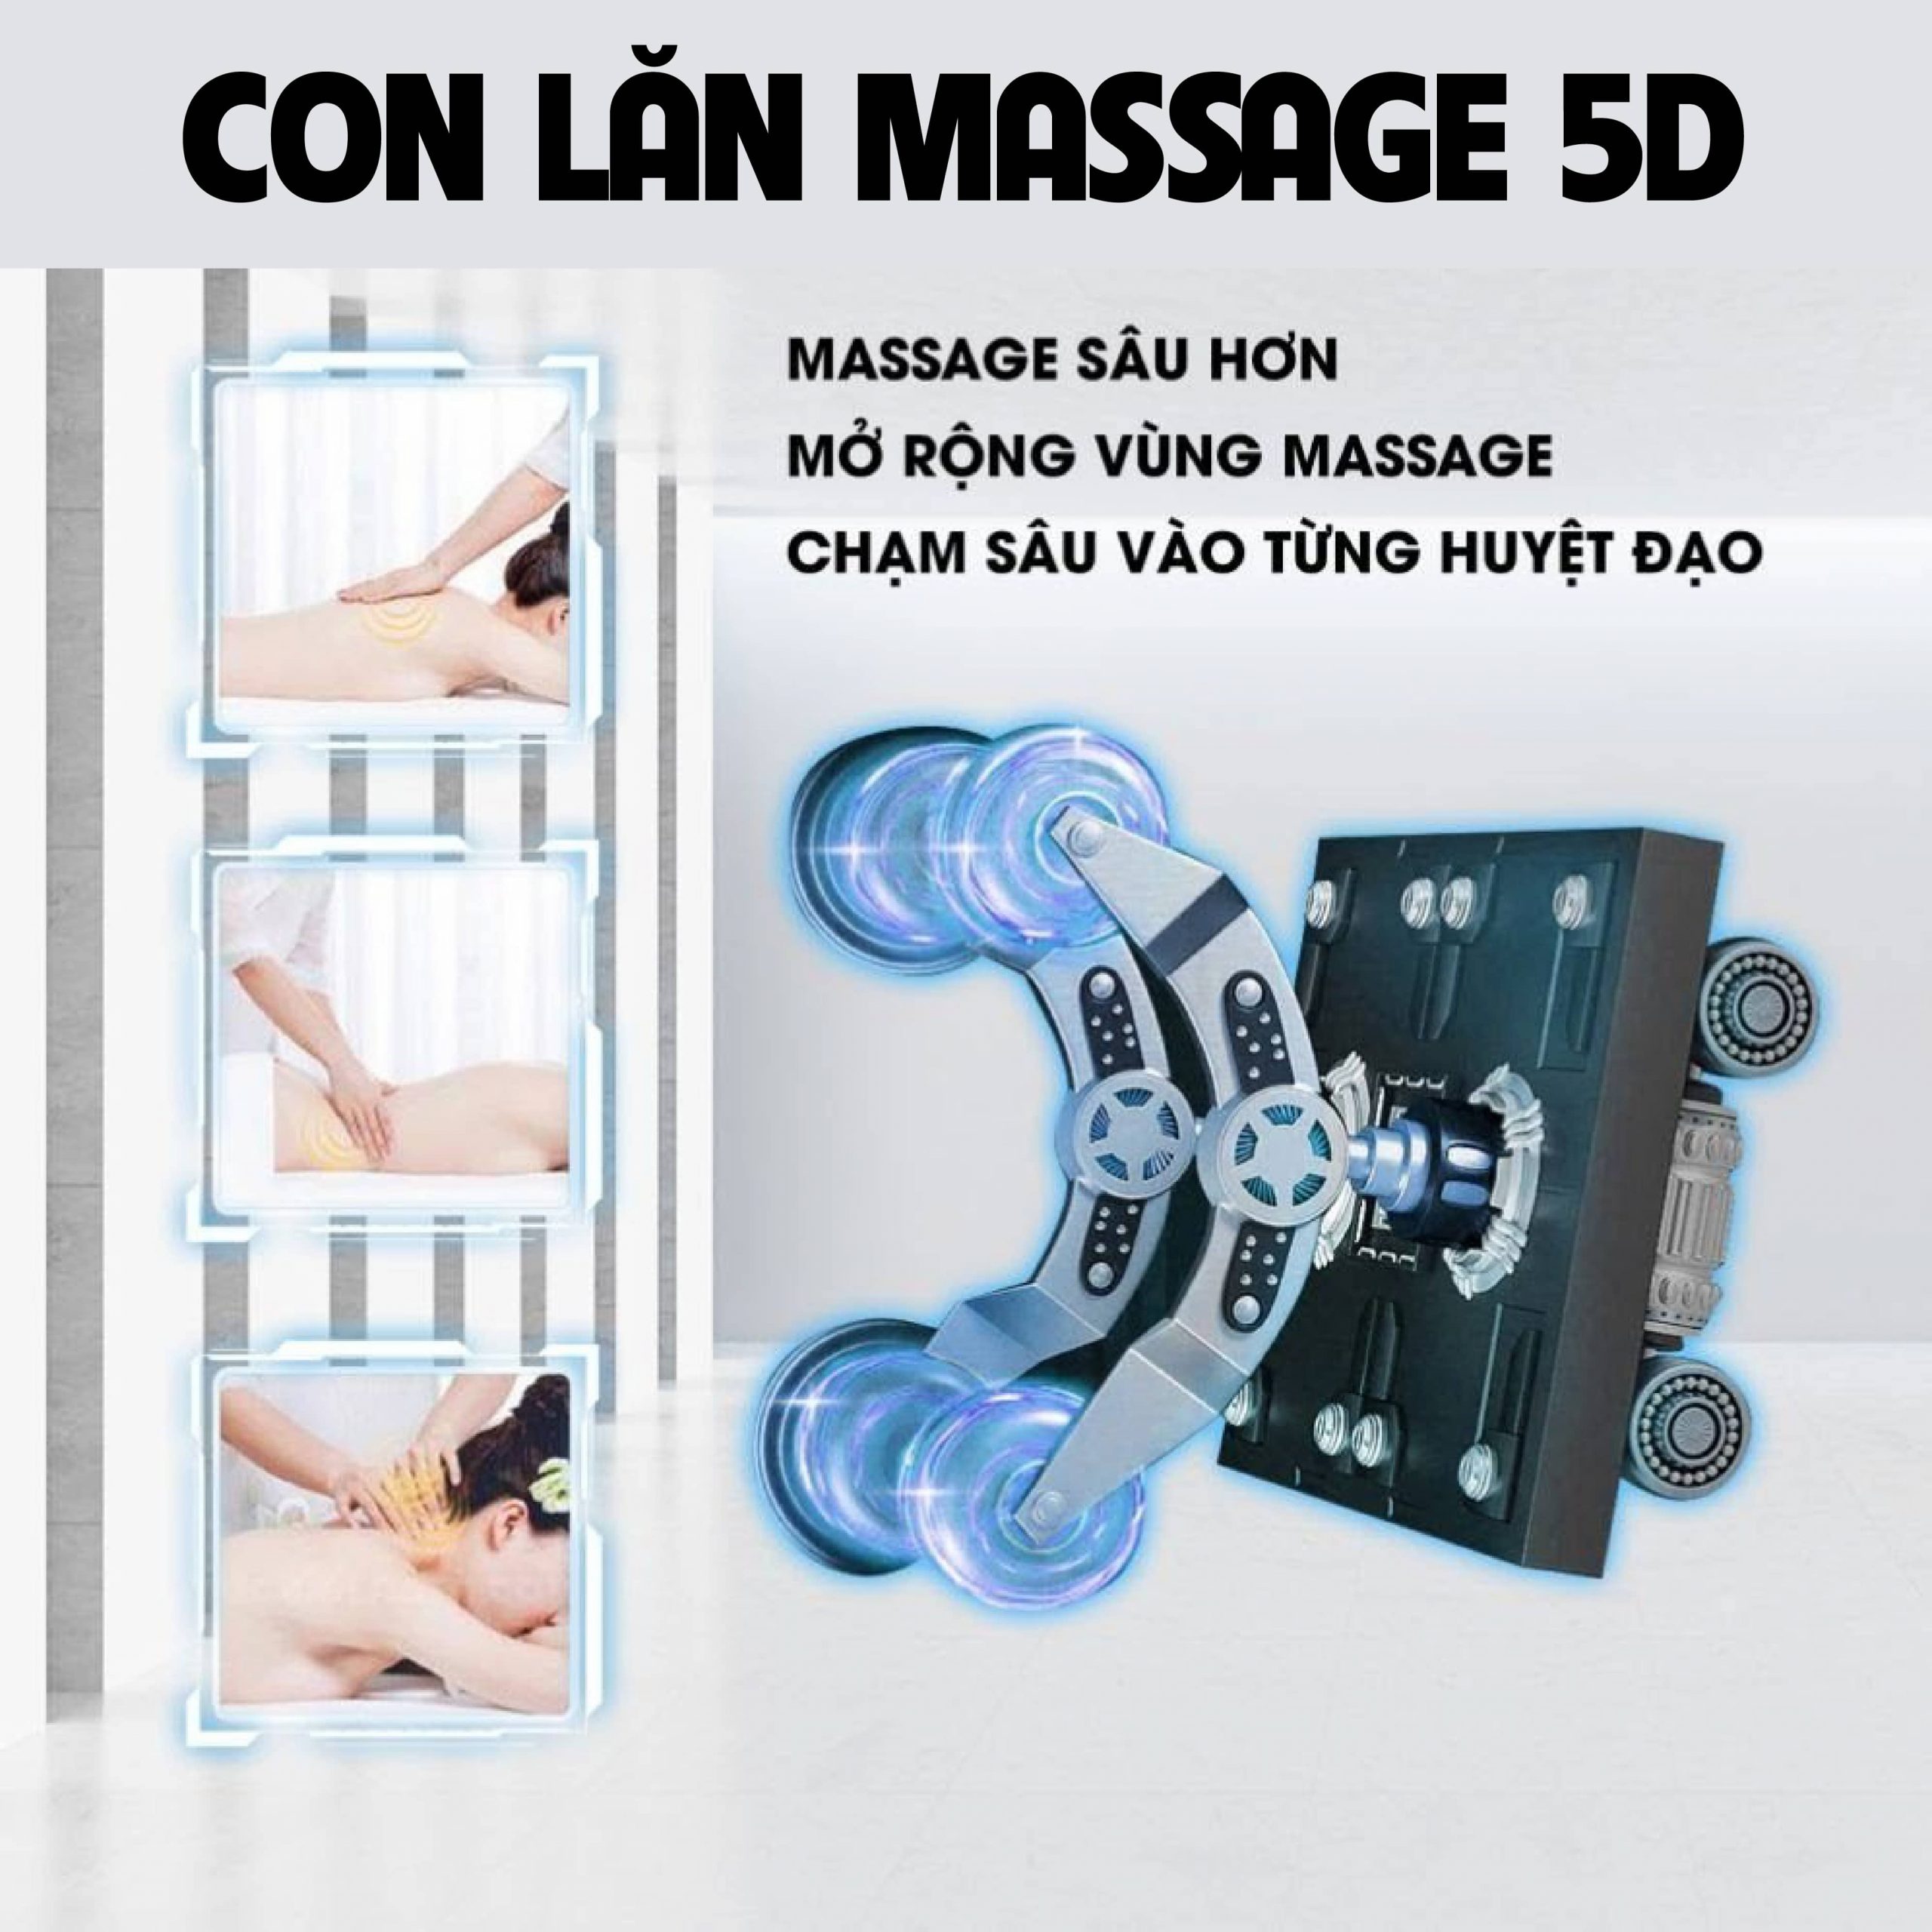 Hệ thống con lăn massage 5D chuyên sâu mở rộng vùng massage đến từng huyệt đạo